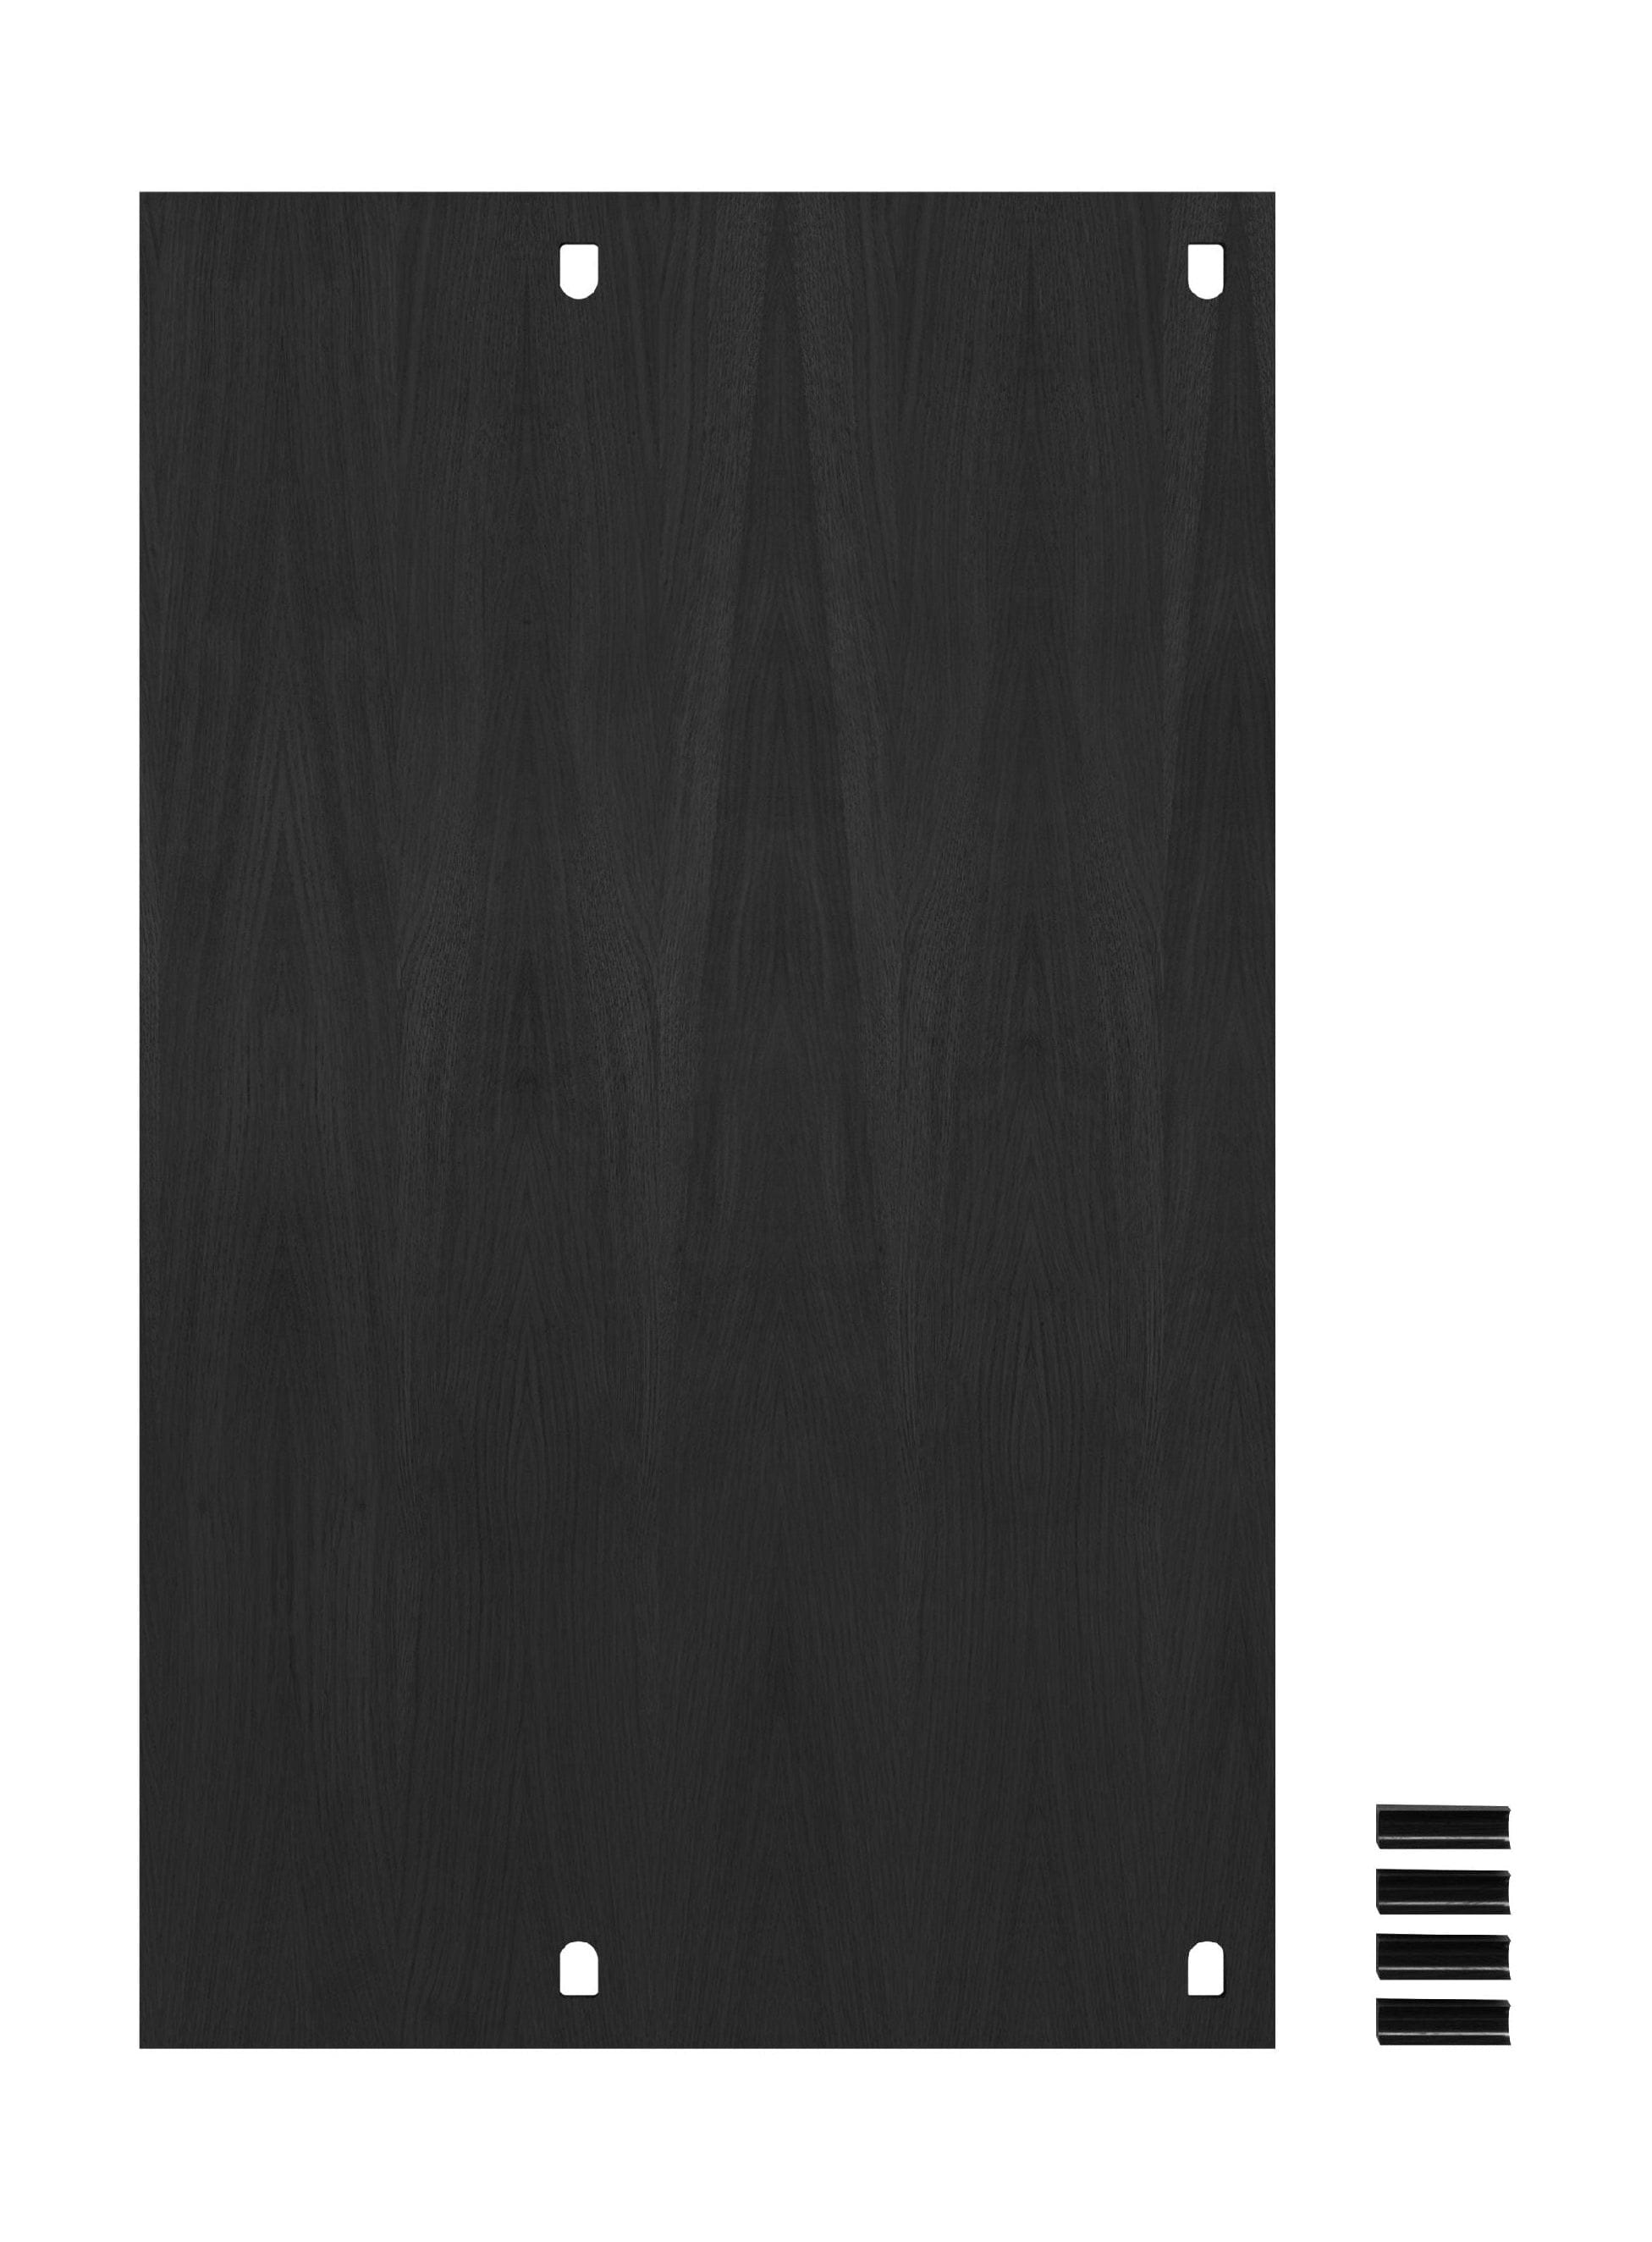 Moebe Spling System/Wall Shelving Desk 85 cm, zwart